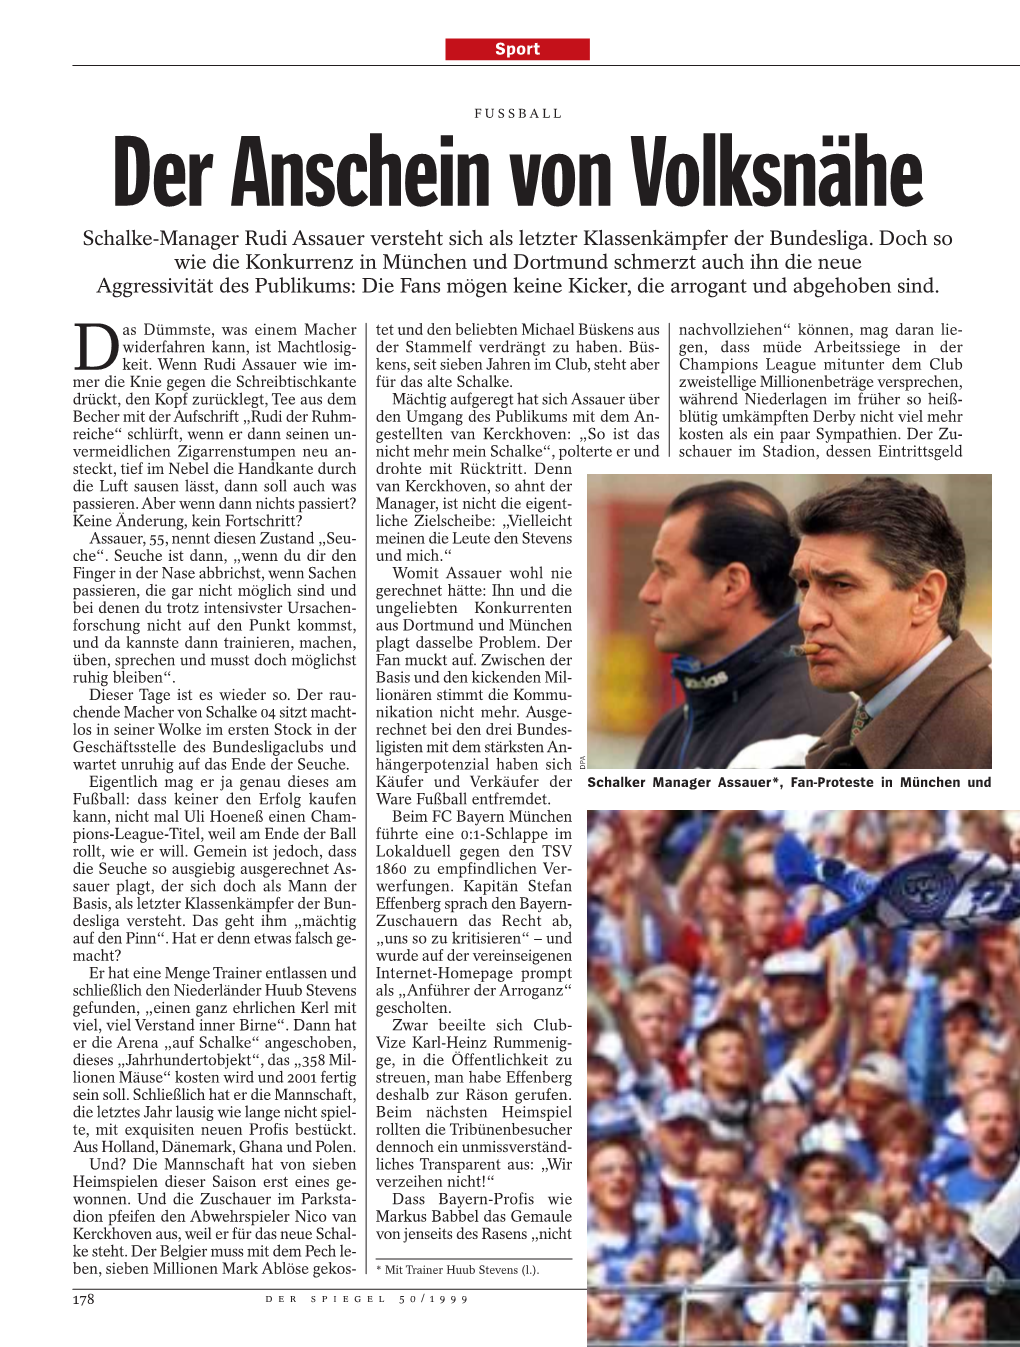 Der Anschein Von Volksnähe Schalke-Manager Rudi Assauer Versteht Sich Als Letzter Klassenkämpfer Der Bundesliga